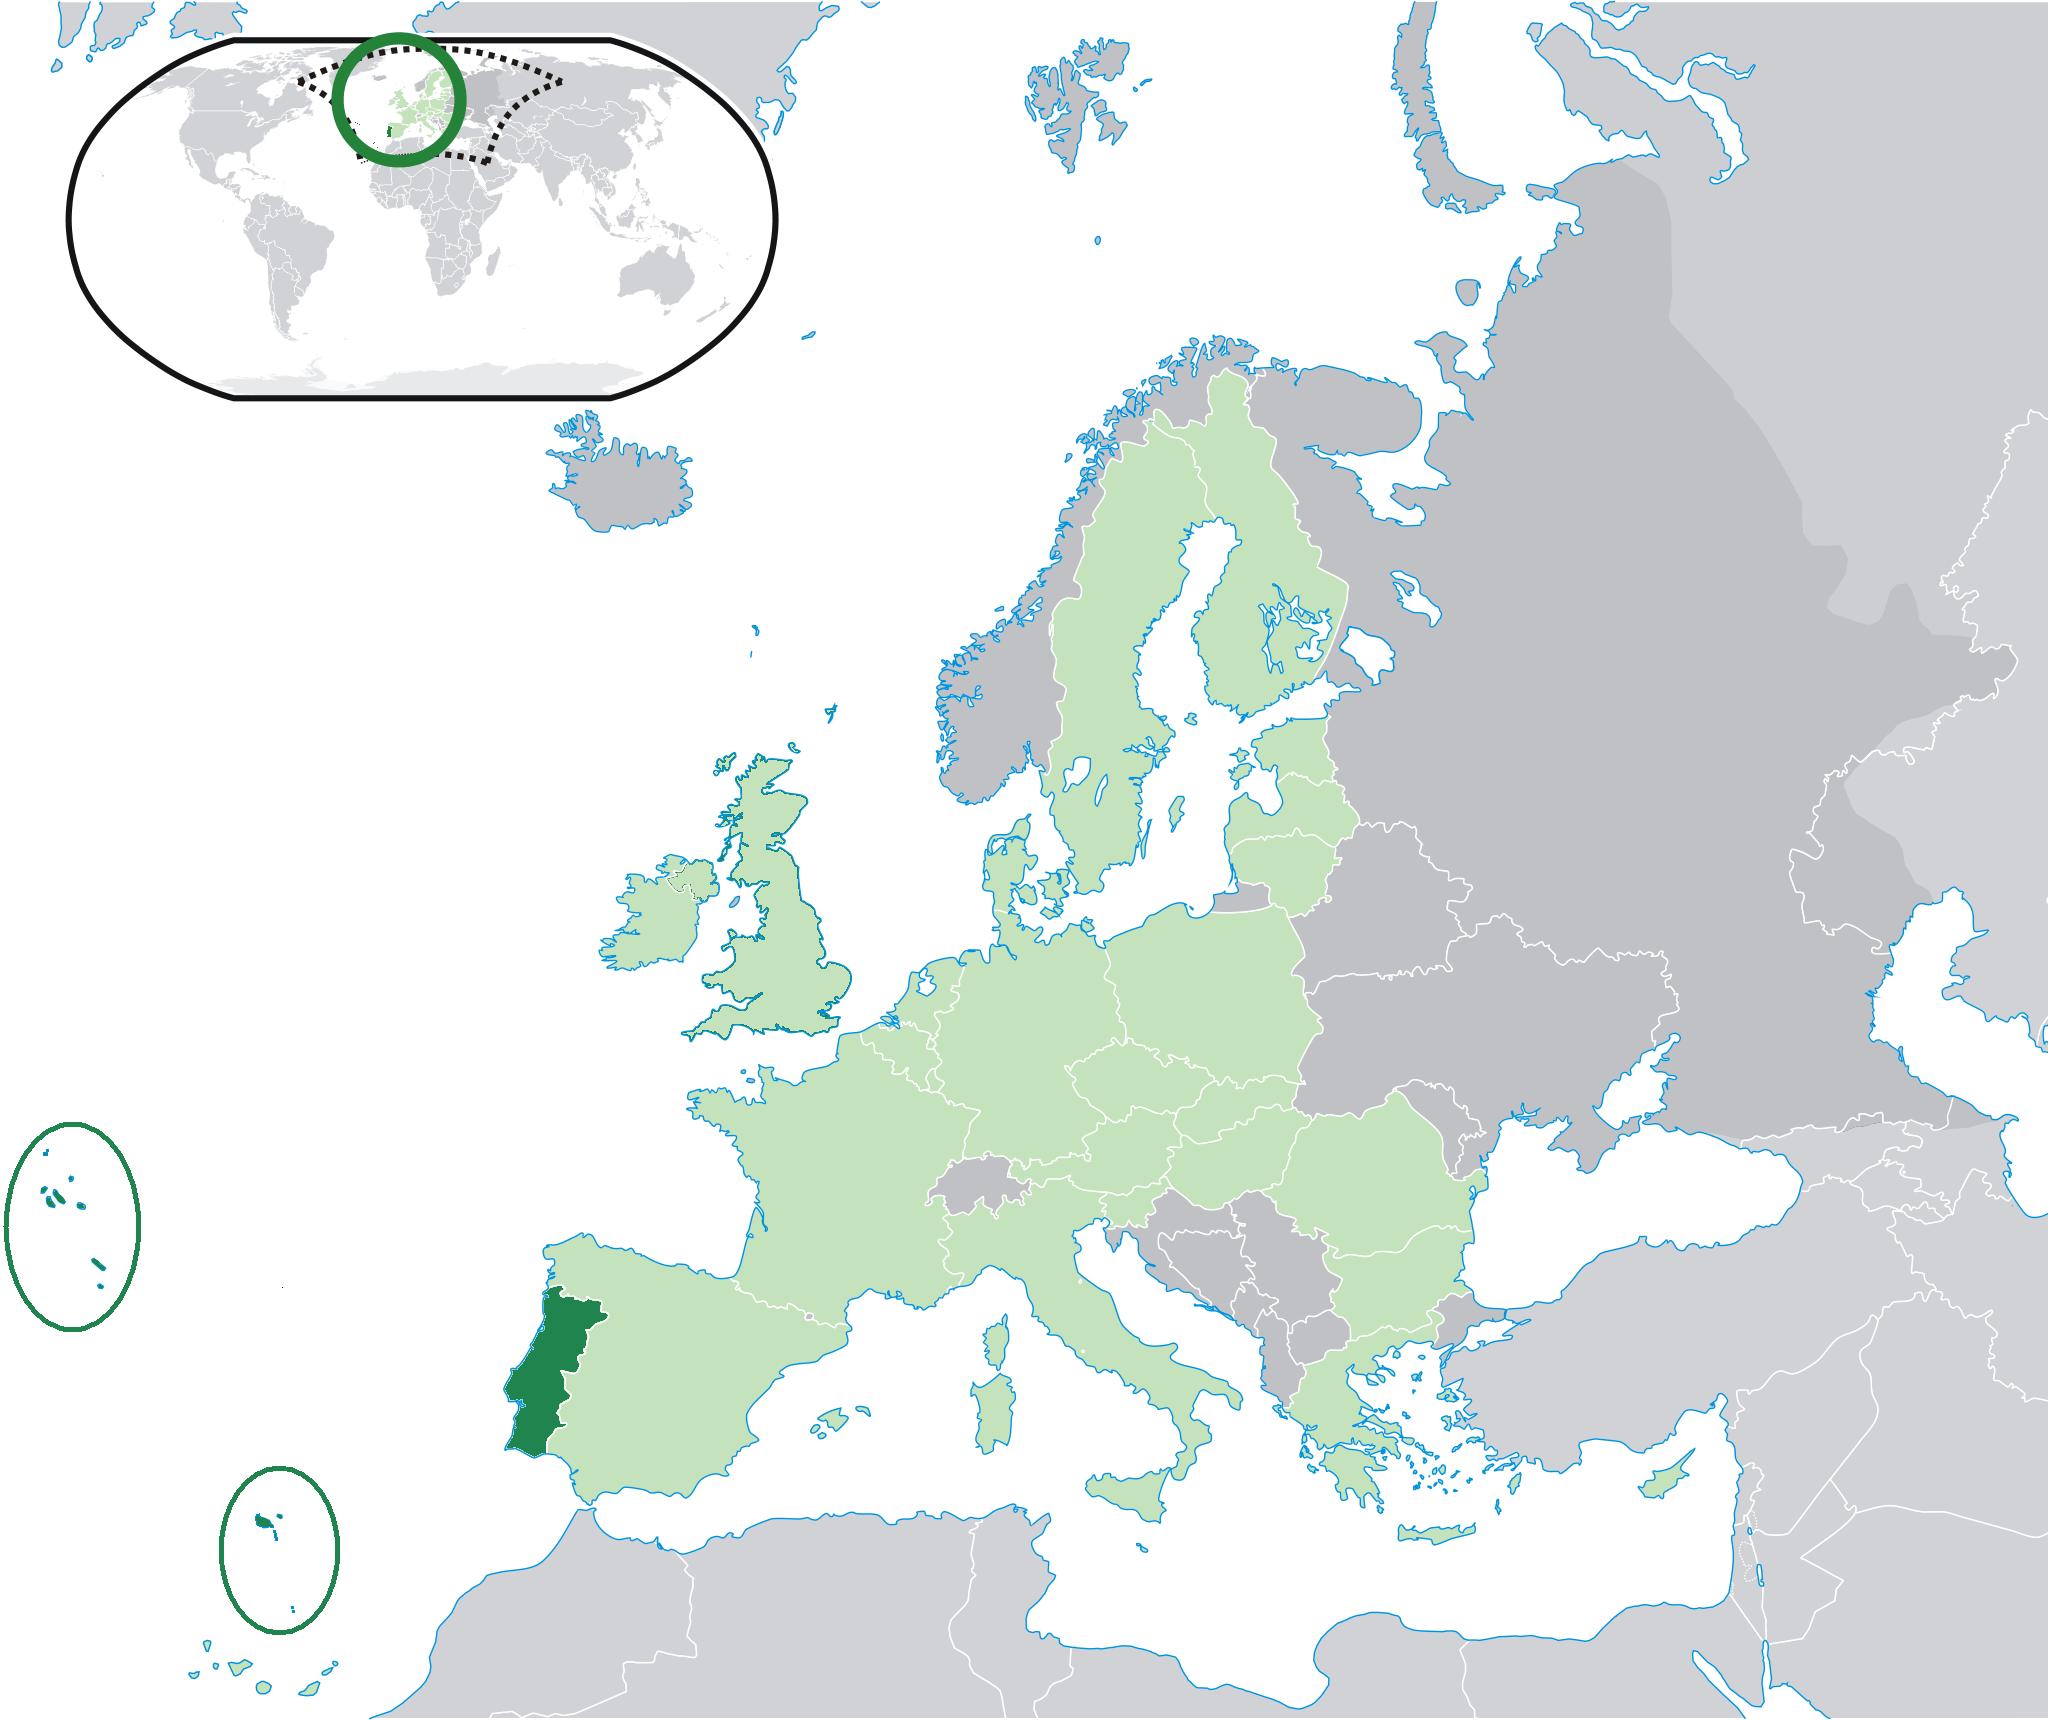 Mapa de Portugal - Mapa detalhado de Portugal (Sul da Europa - Europa)